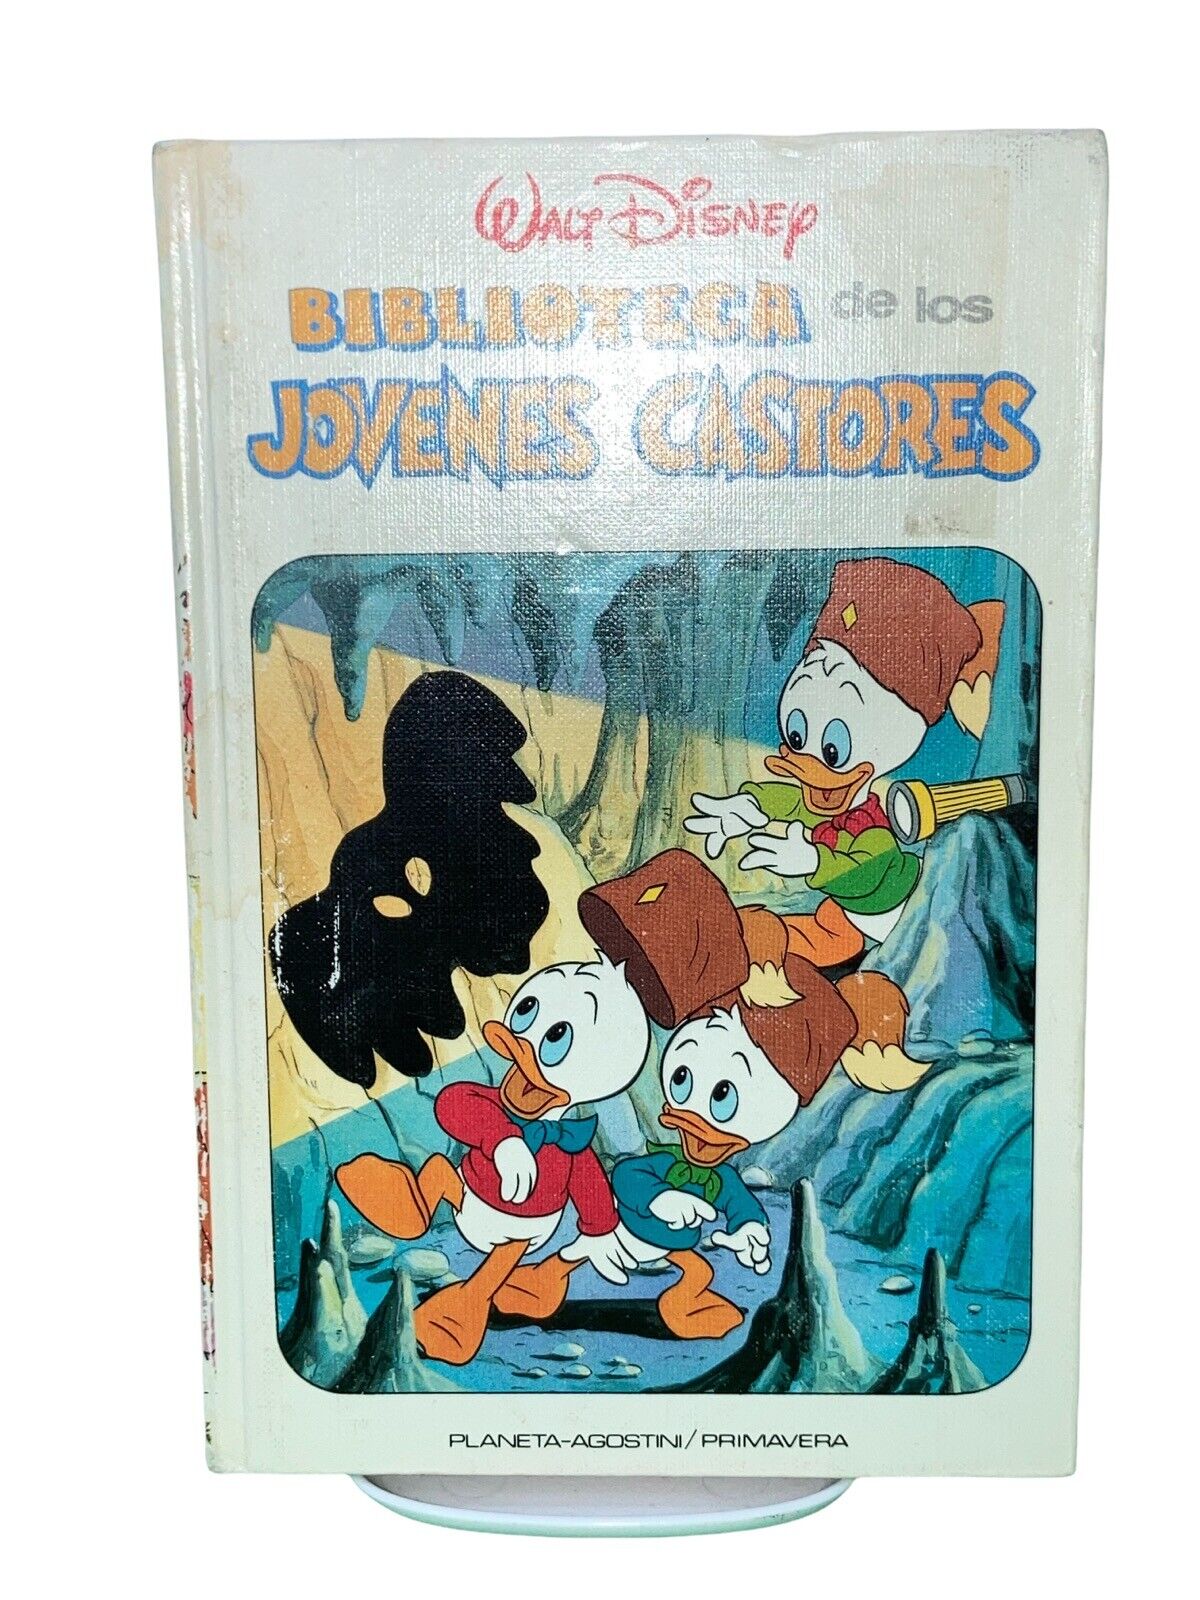 BOOK HARDCOVER - Biblioteca De Los Jovenes Castores #24 Walt Disney 1988 Vintage